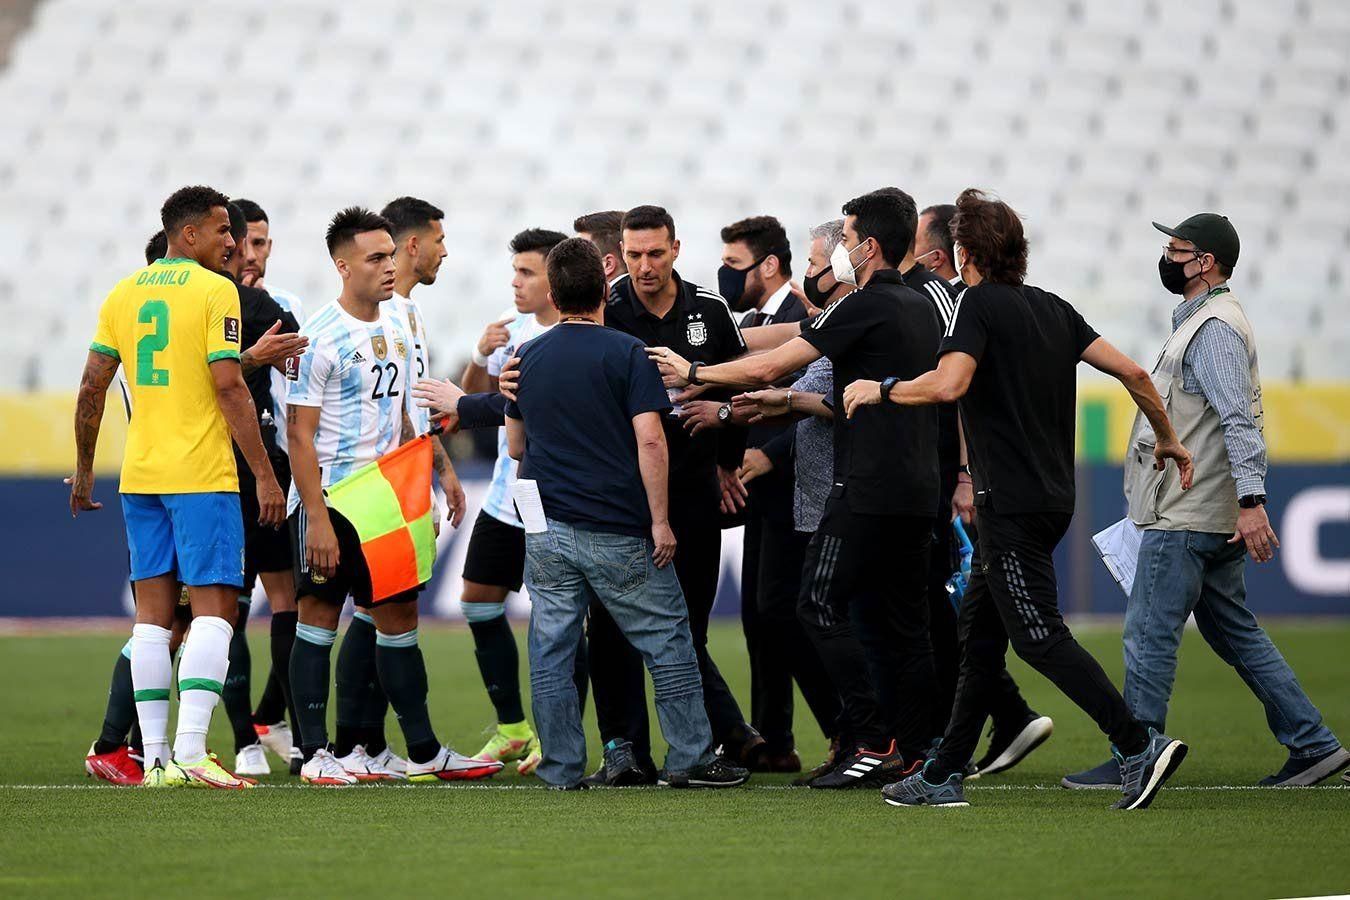 Бразилия получит техническое поражение из-за срыва игры с Аргентиной, – СМИ